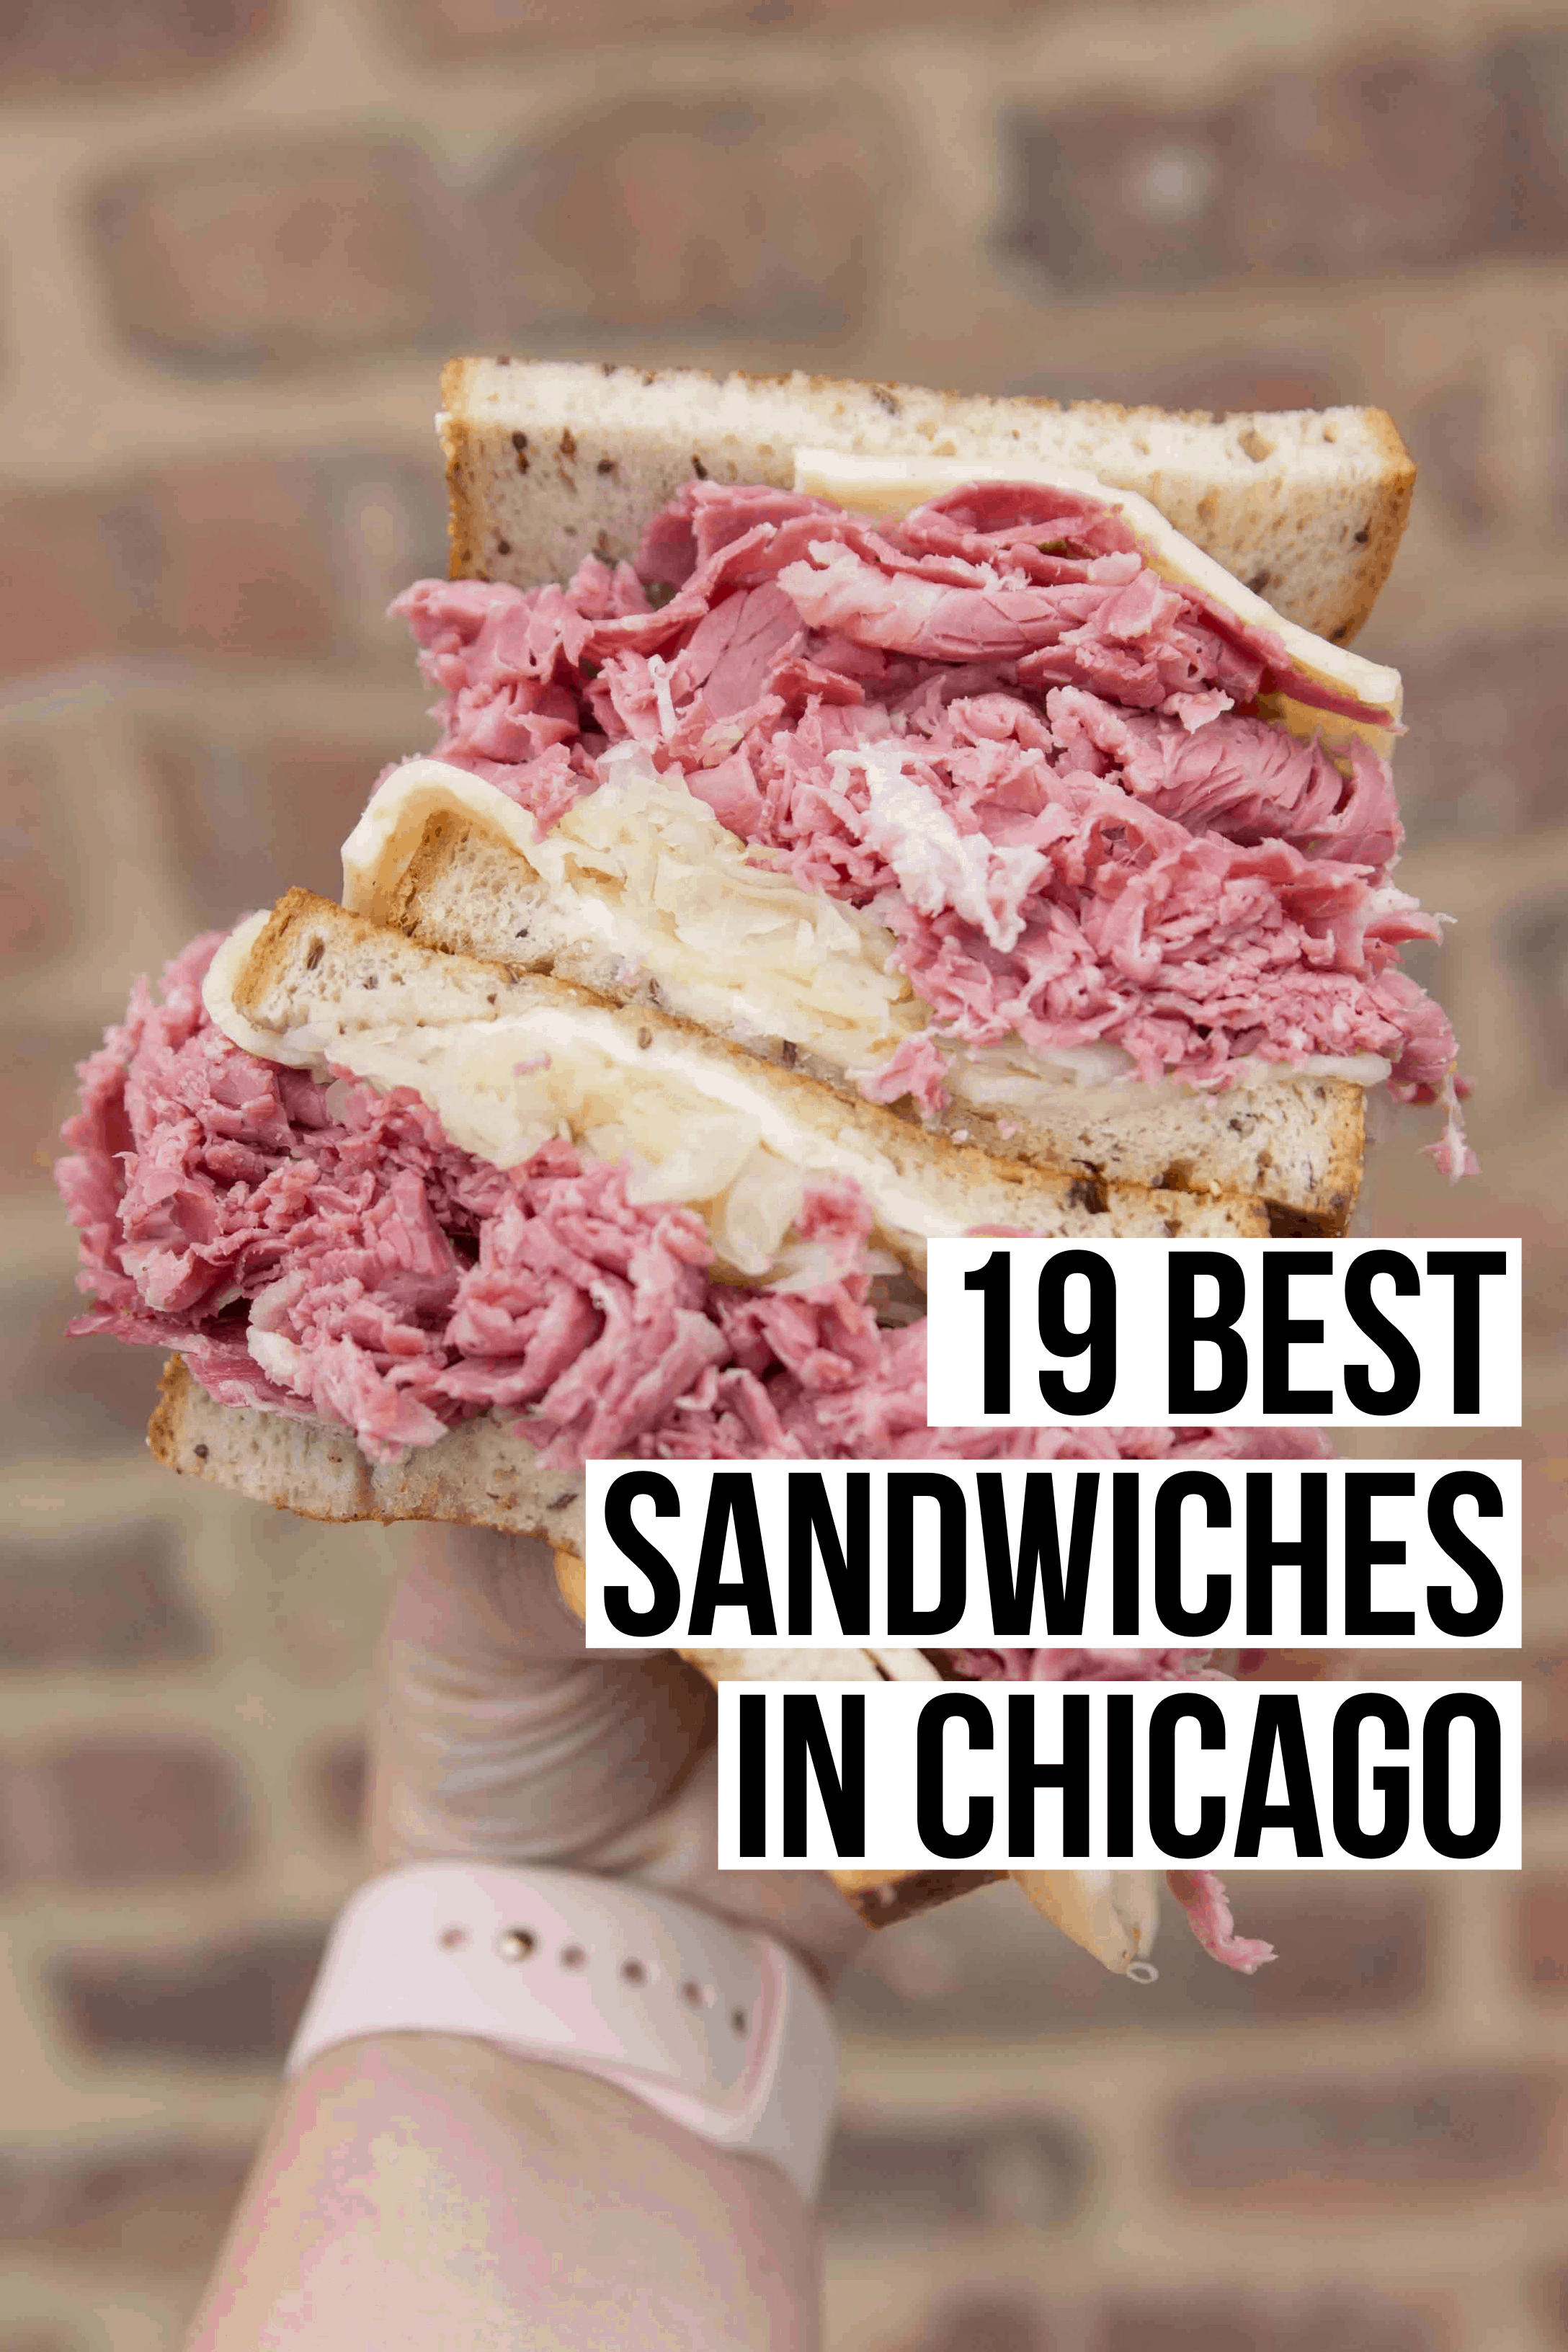 Best Sandwiches in Chicago: 19 Top Picks